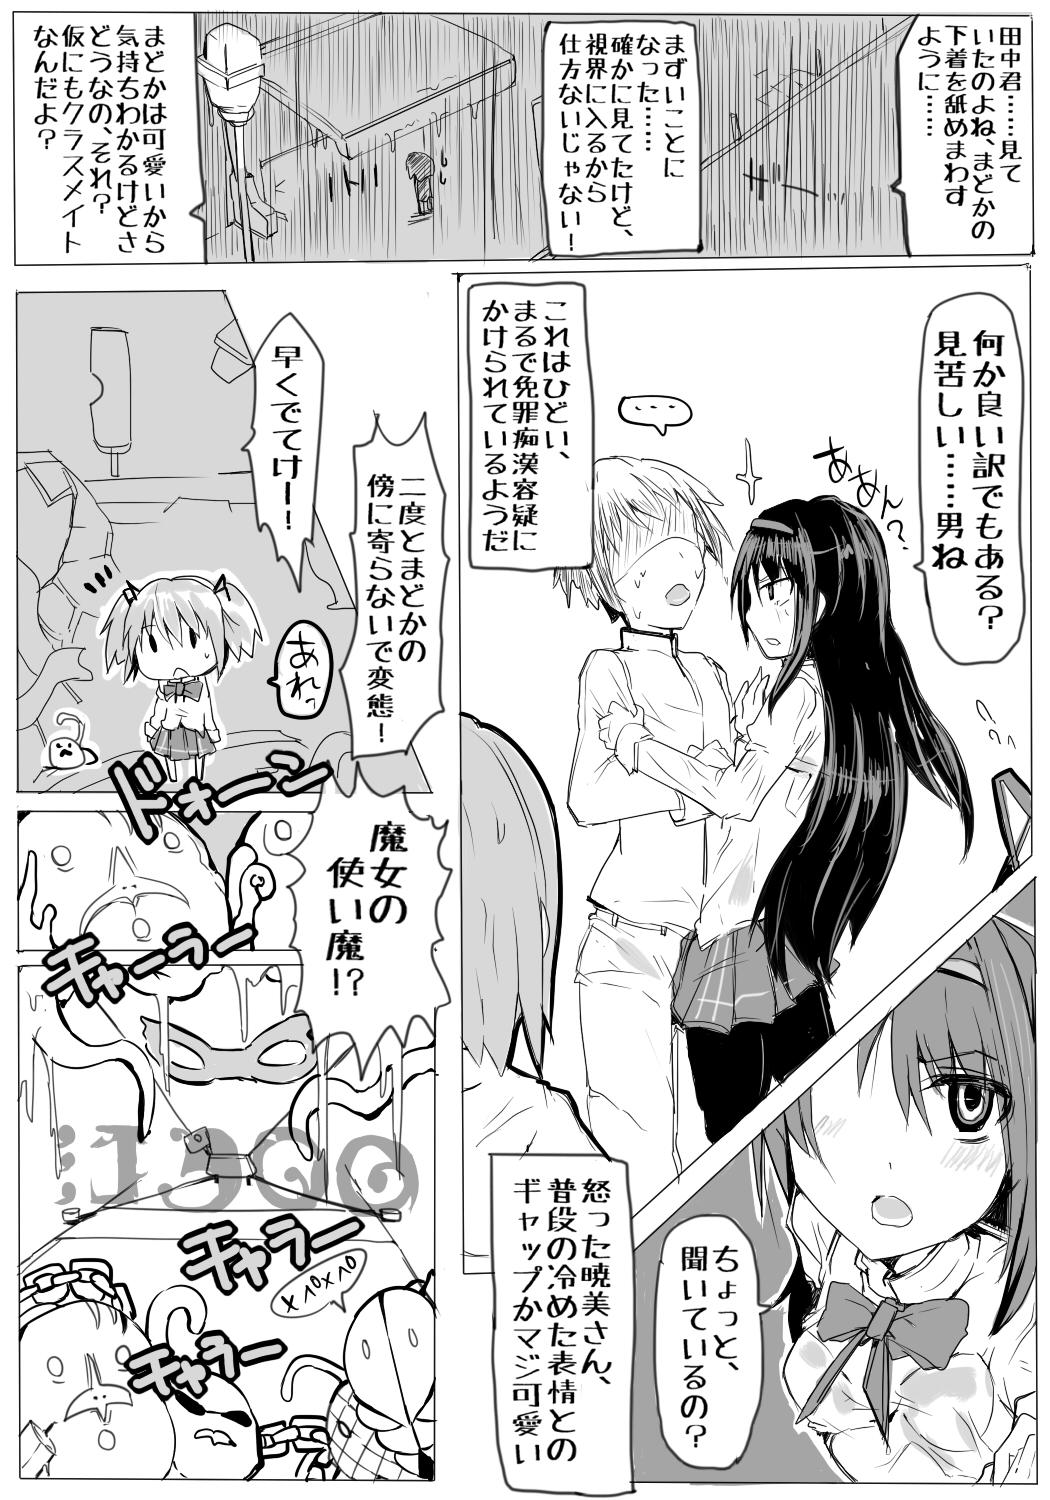 Chupando 魔法少女まどか☆マギカと田中 - Puella magi madoka magica Ex Girlfriend - Page 3